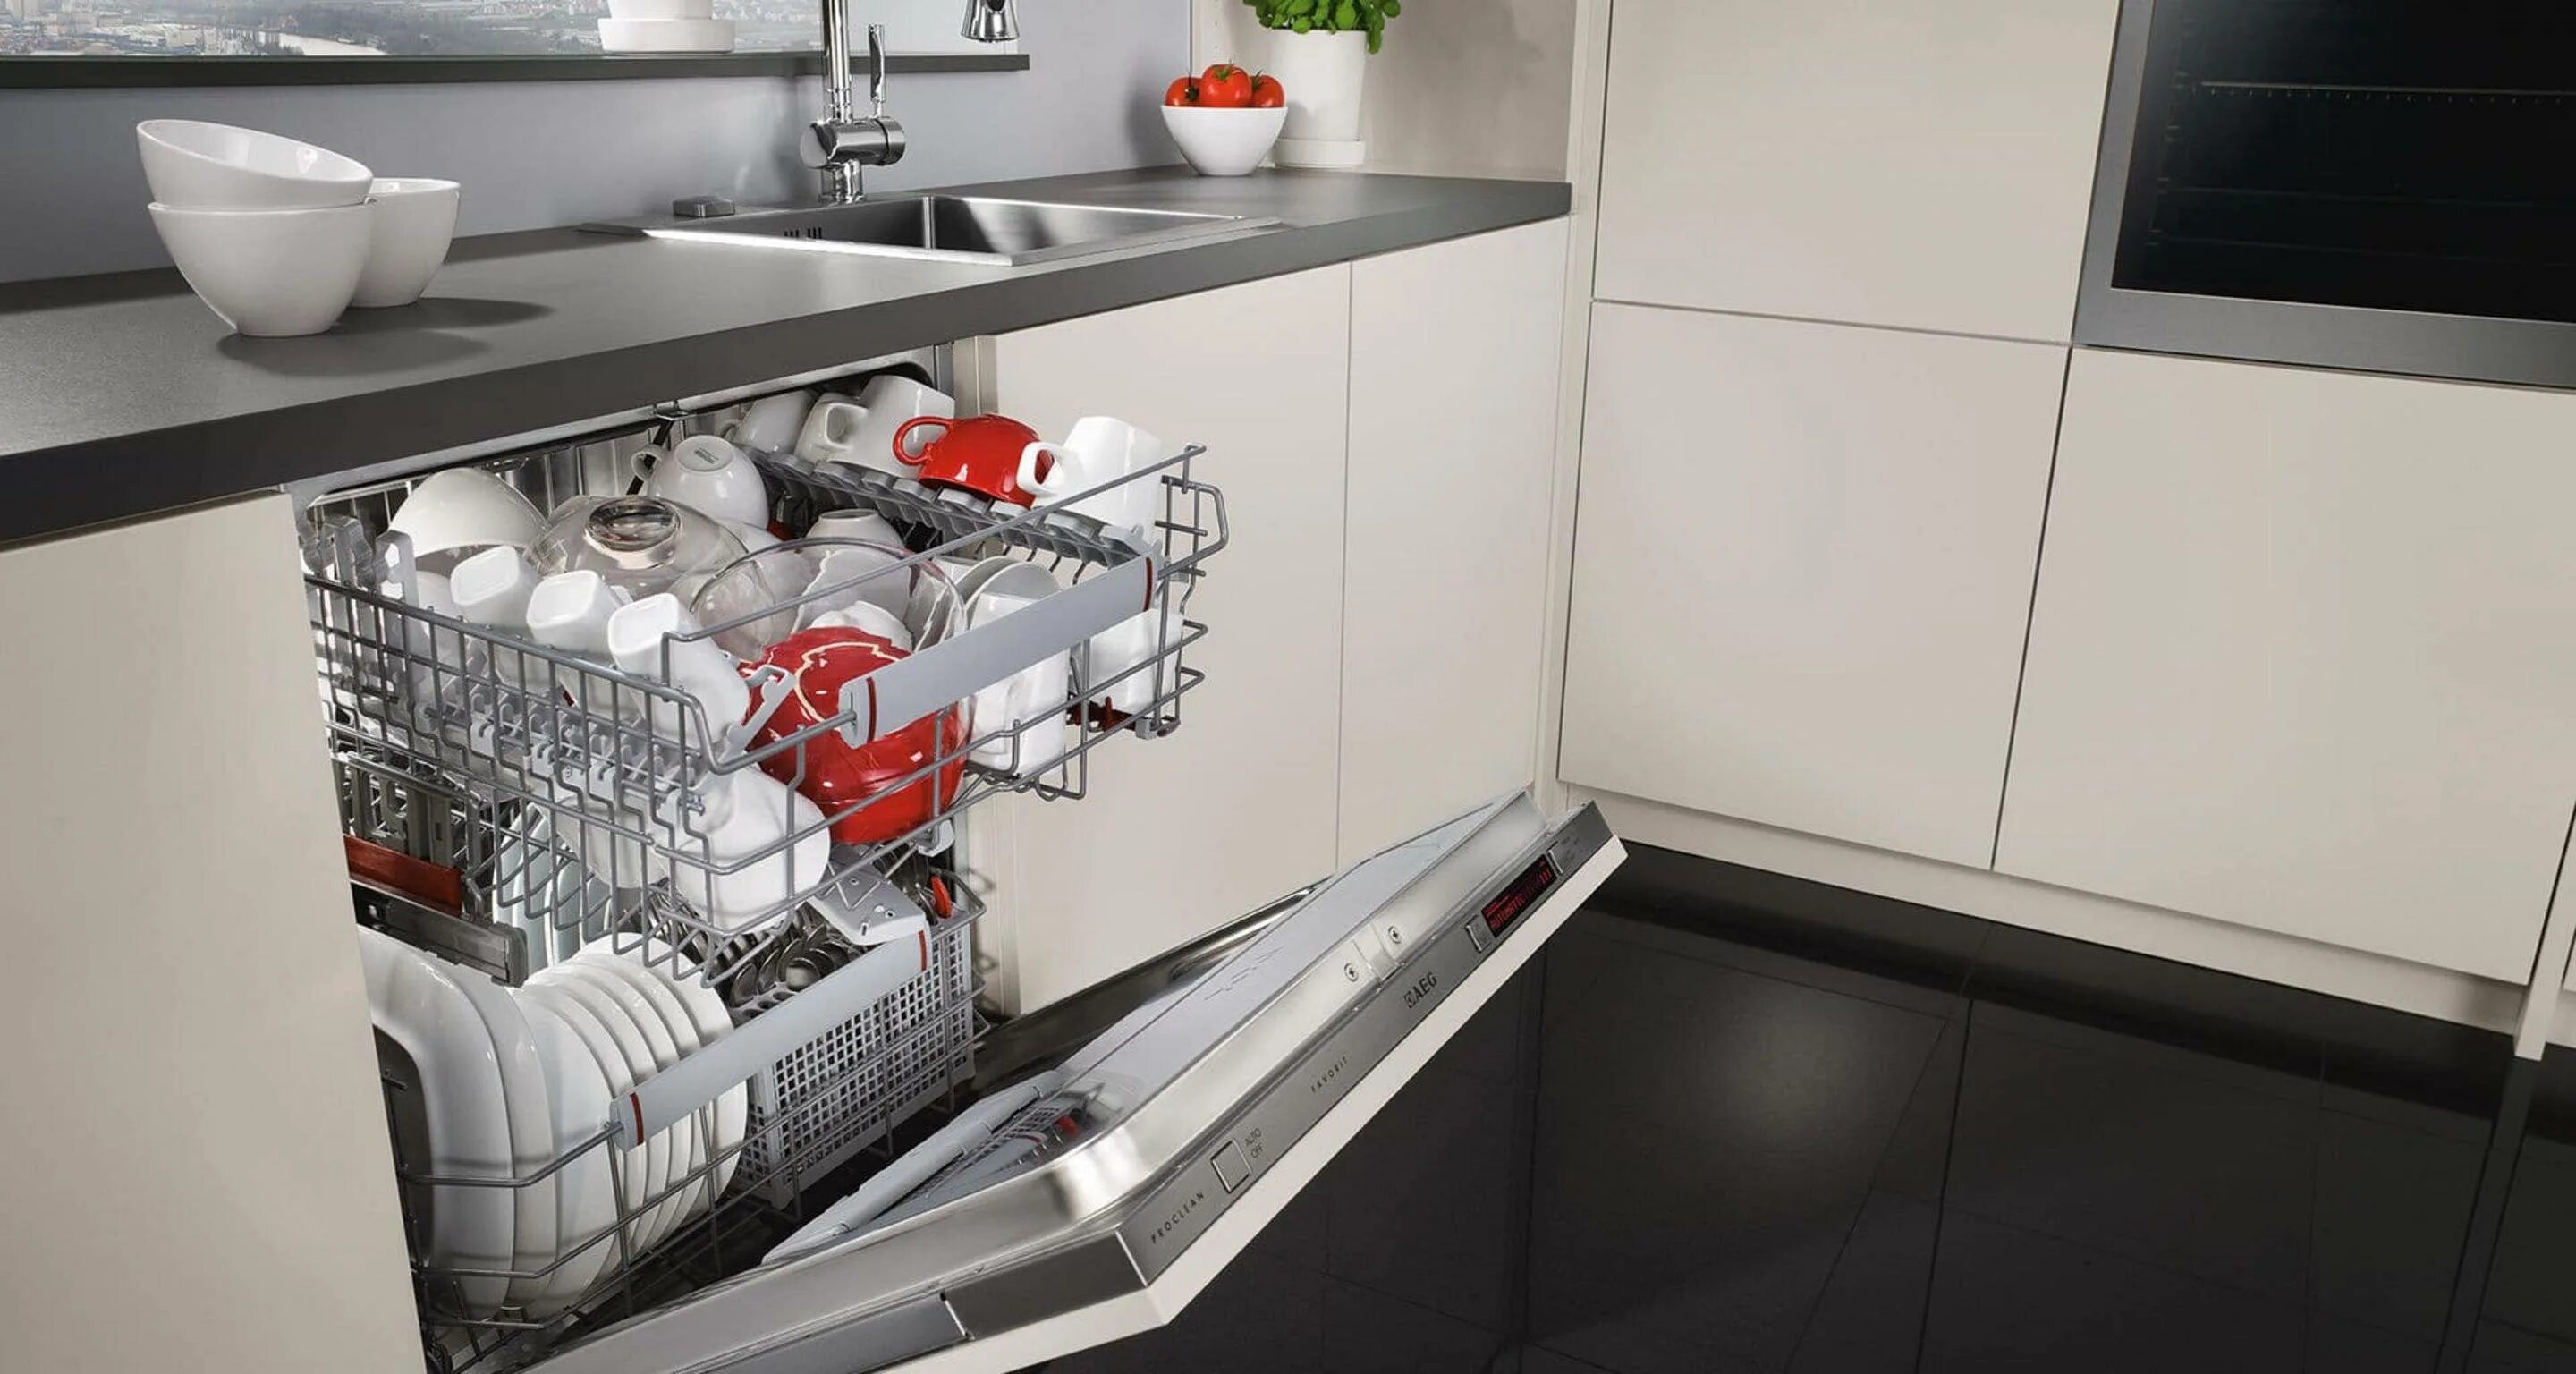 ПММ 450 встраиваемая под фасад 600. Топ посудомоечных машин 60 см встраиваемая 2020. Встроенная компактная ПММ 600. Посудомойка 45 см встраиваемая.